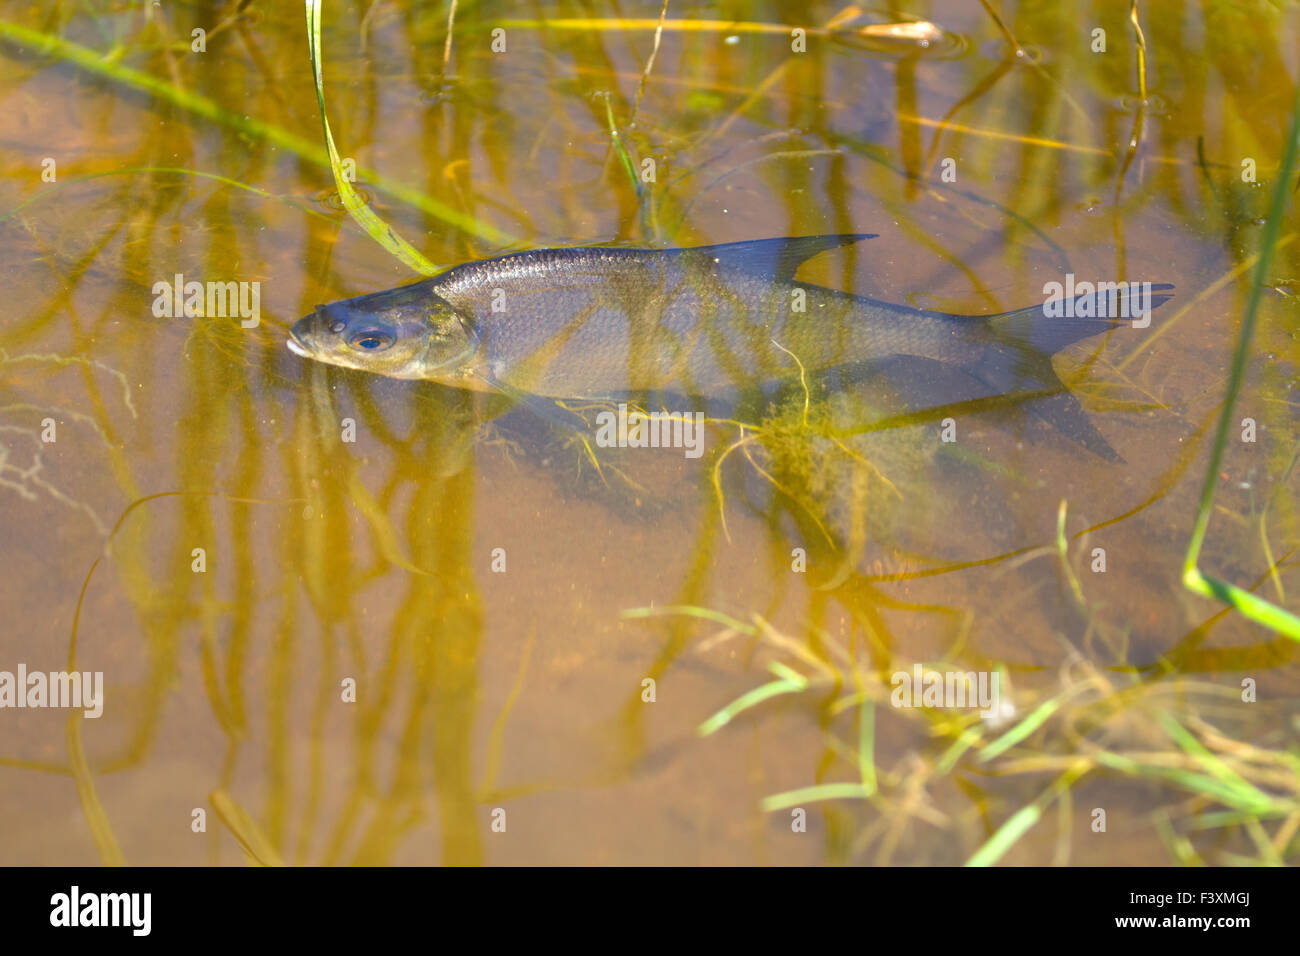 white-eye fish underwater Stock Photo